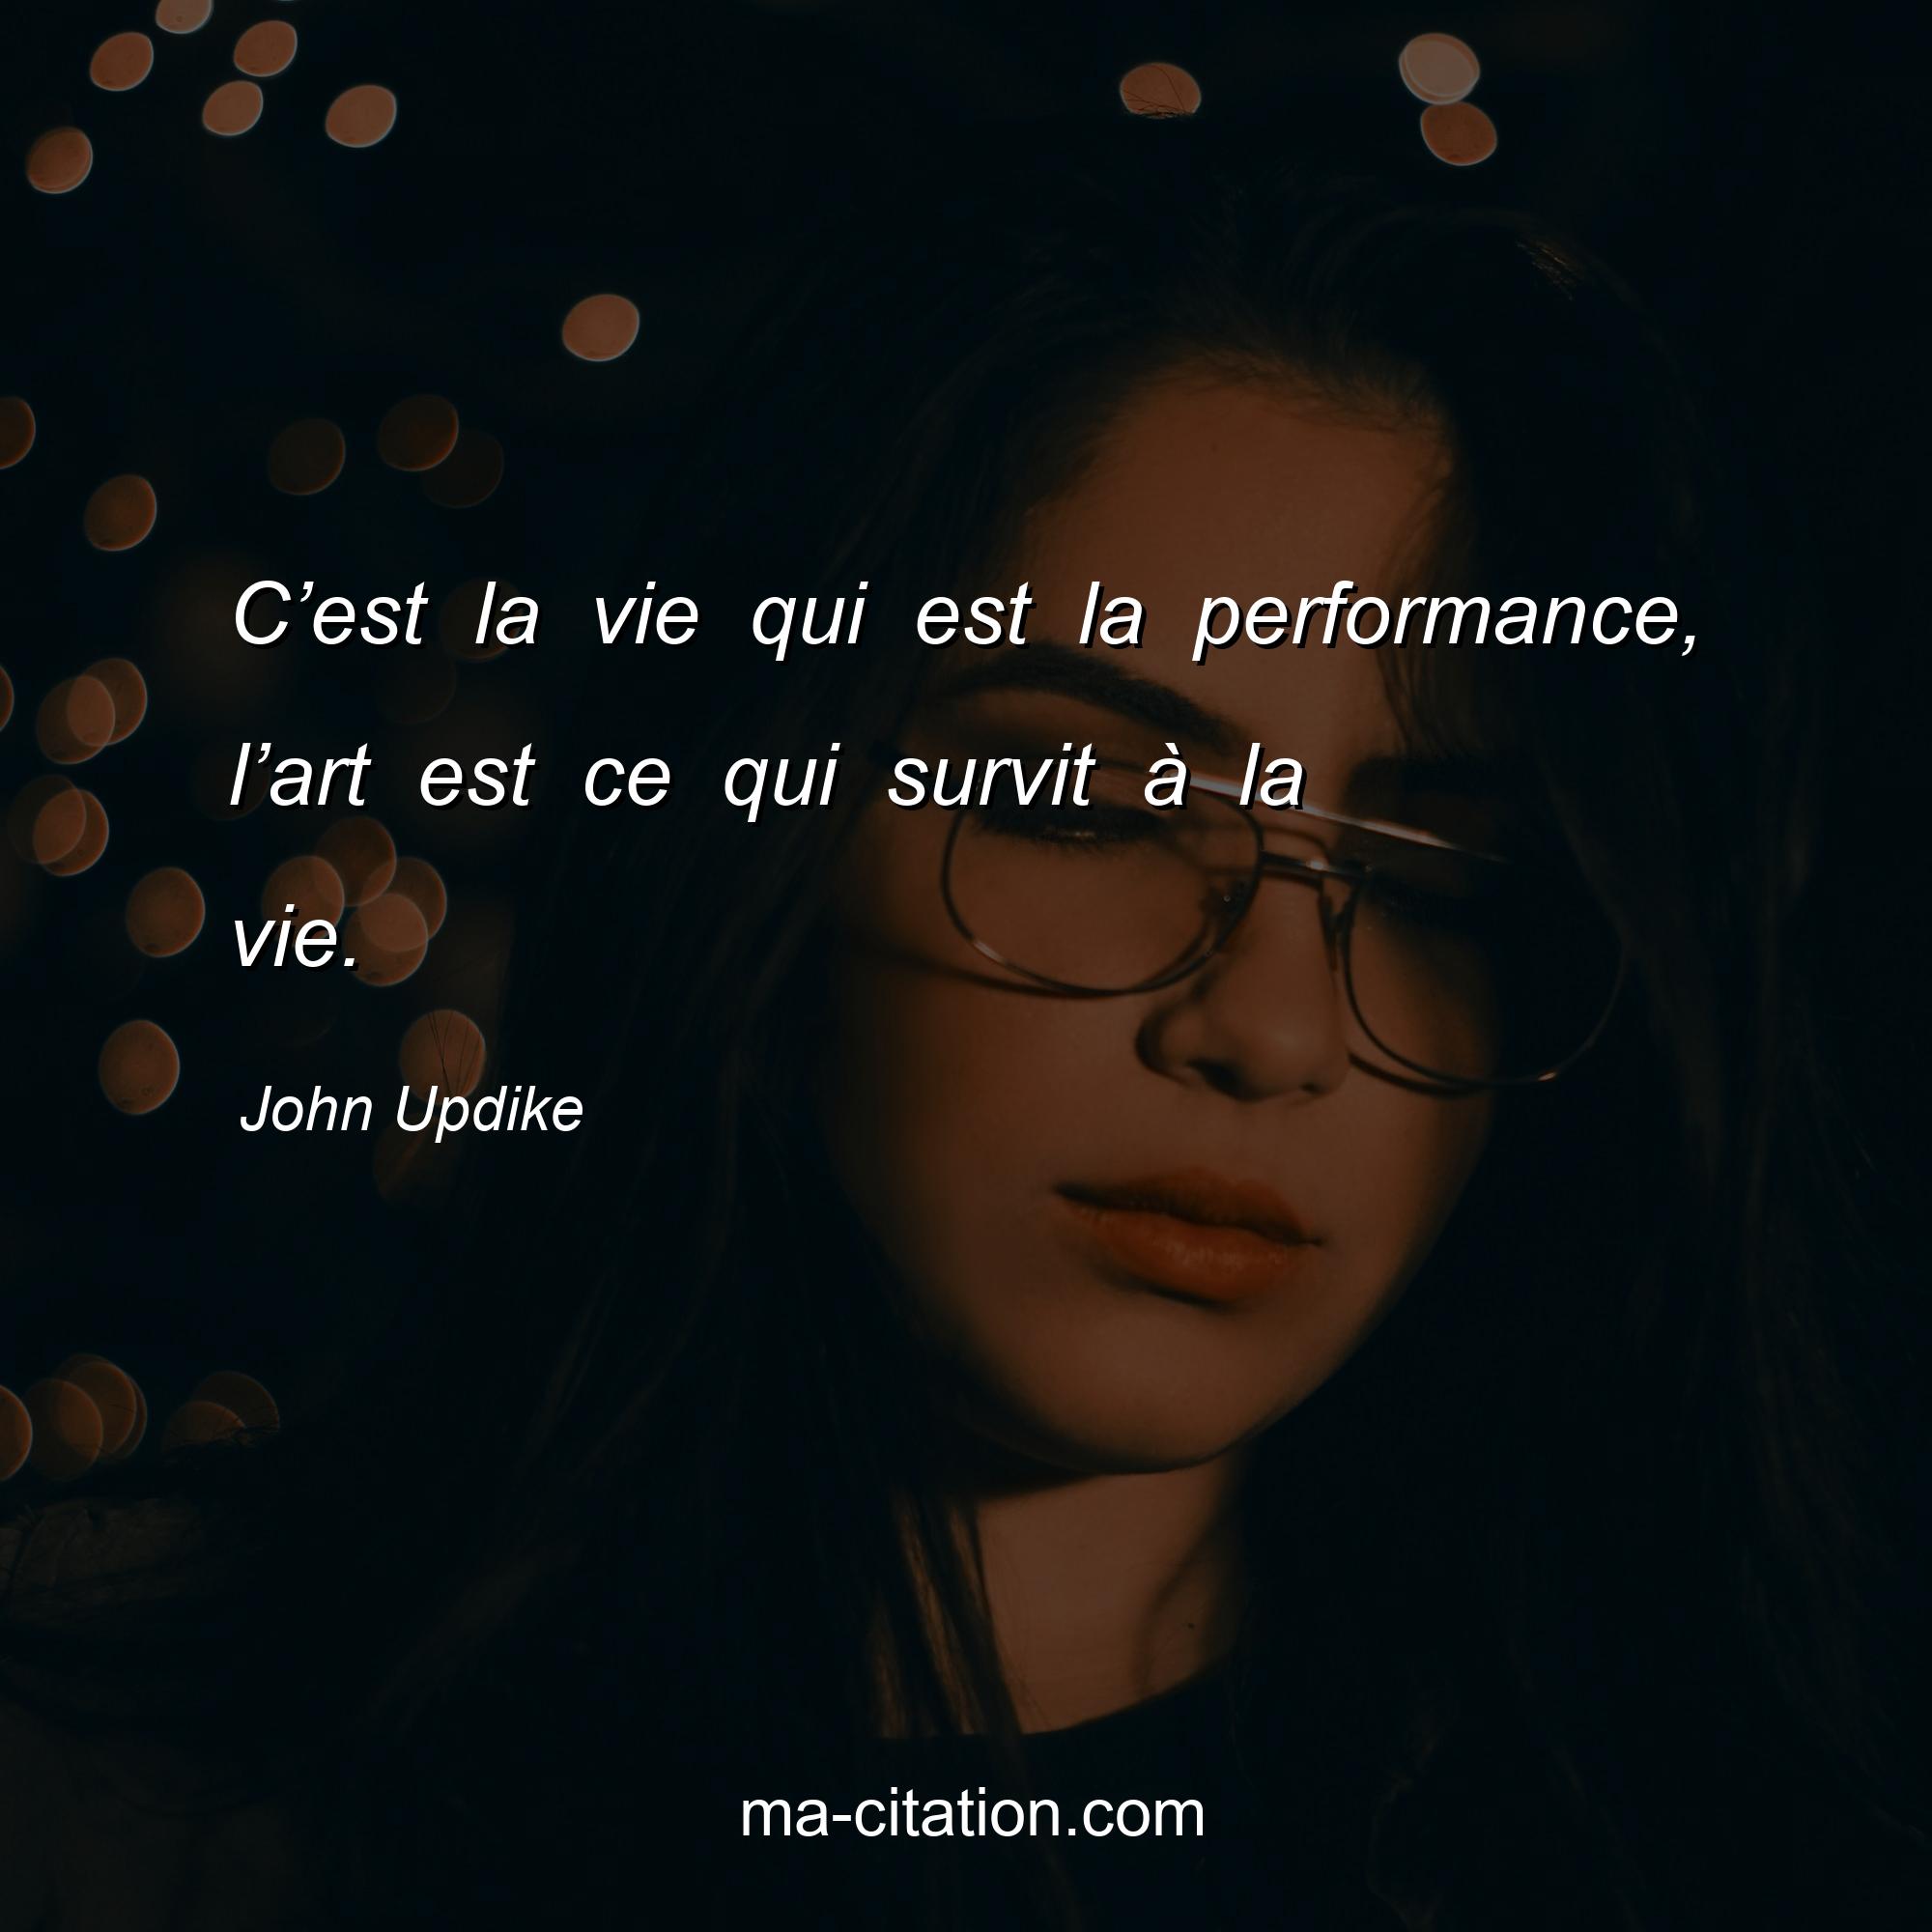 John Updike : C’est la vie qui est la performance, l’art est ce qui survit à la vie.